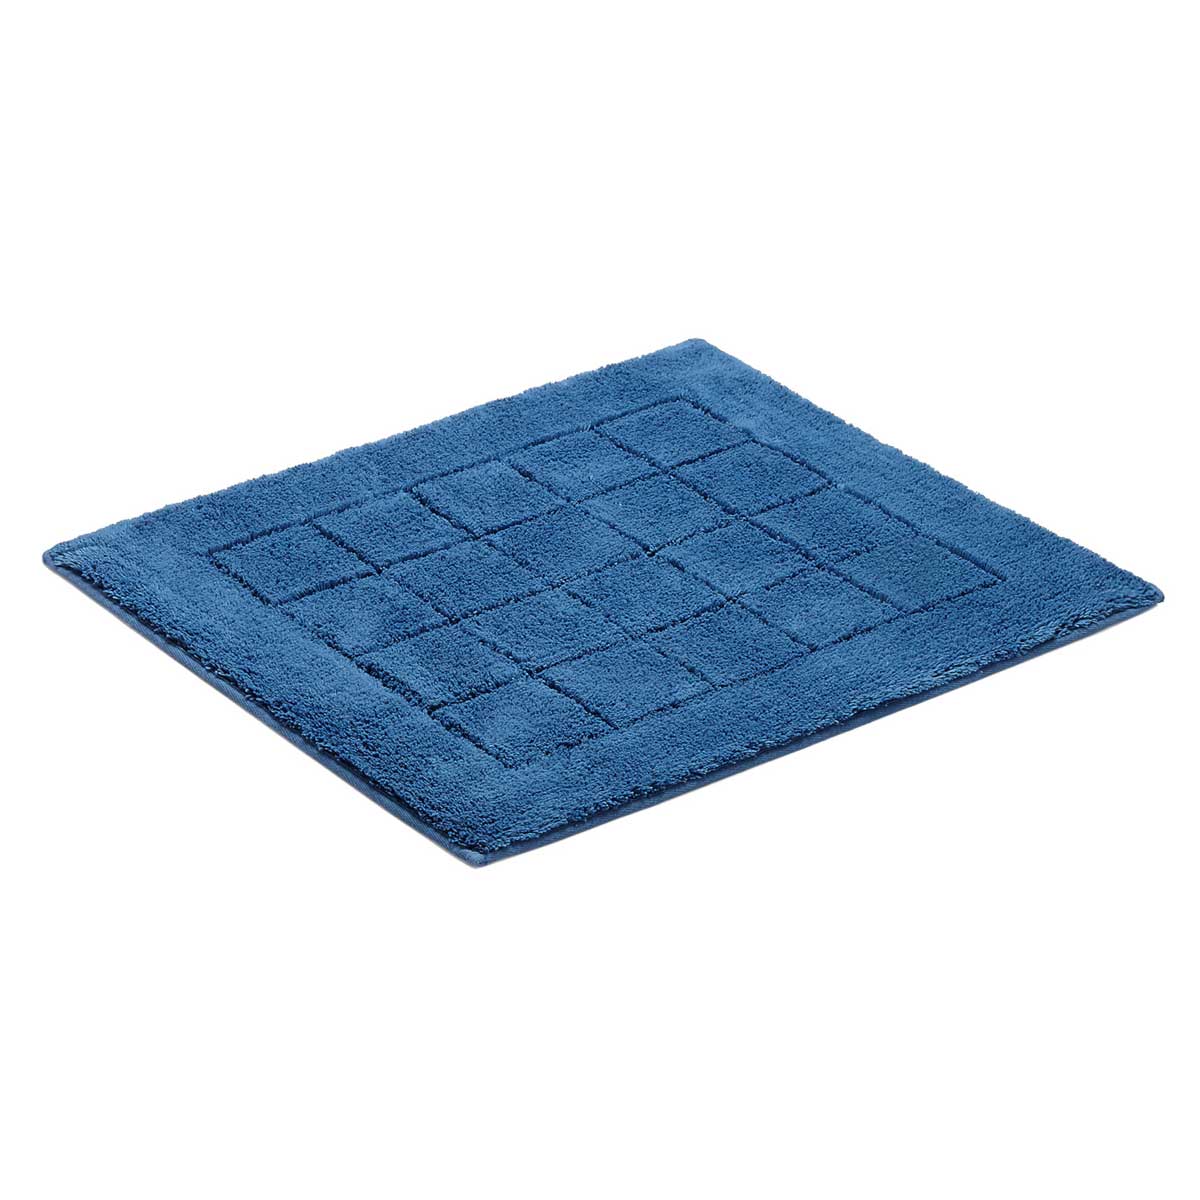 Коврик для ванной комнаты Vossen Exclusive 55x65см, синий коврик для ванной комнаты ridder